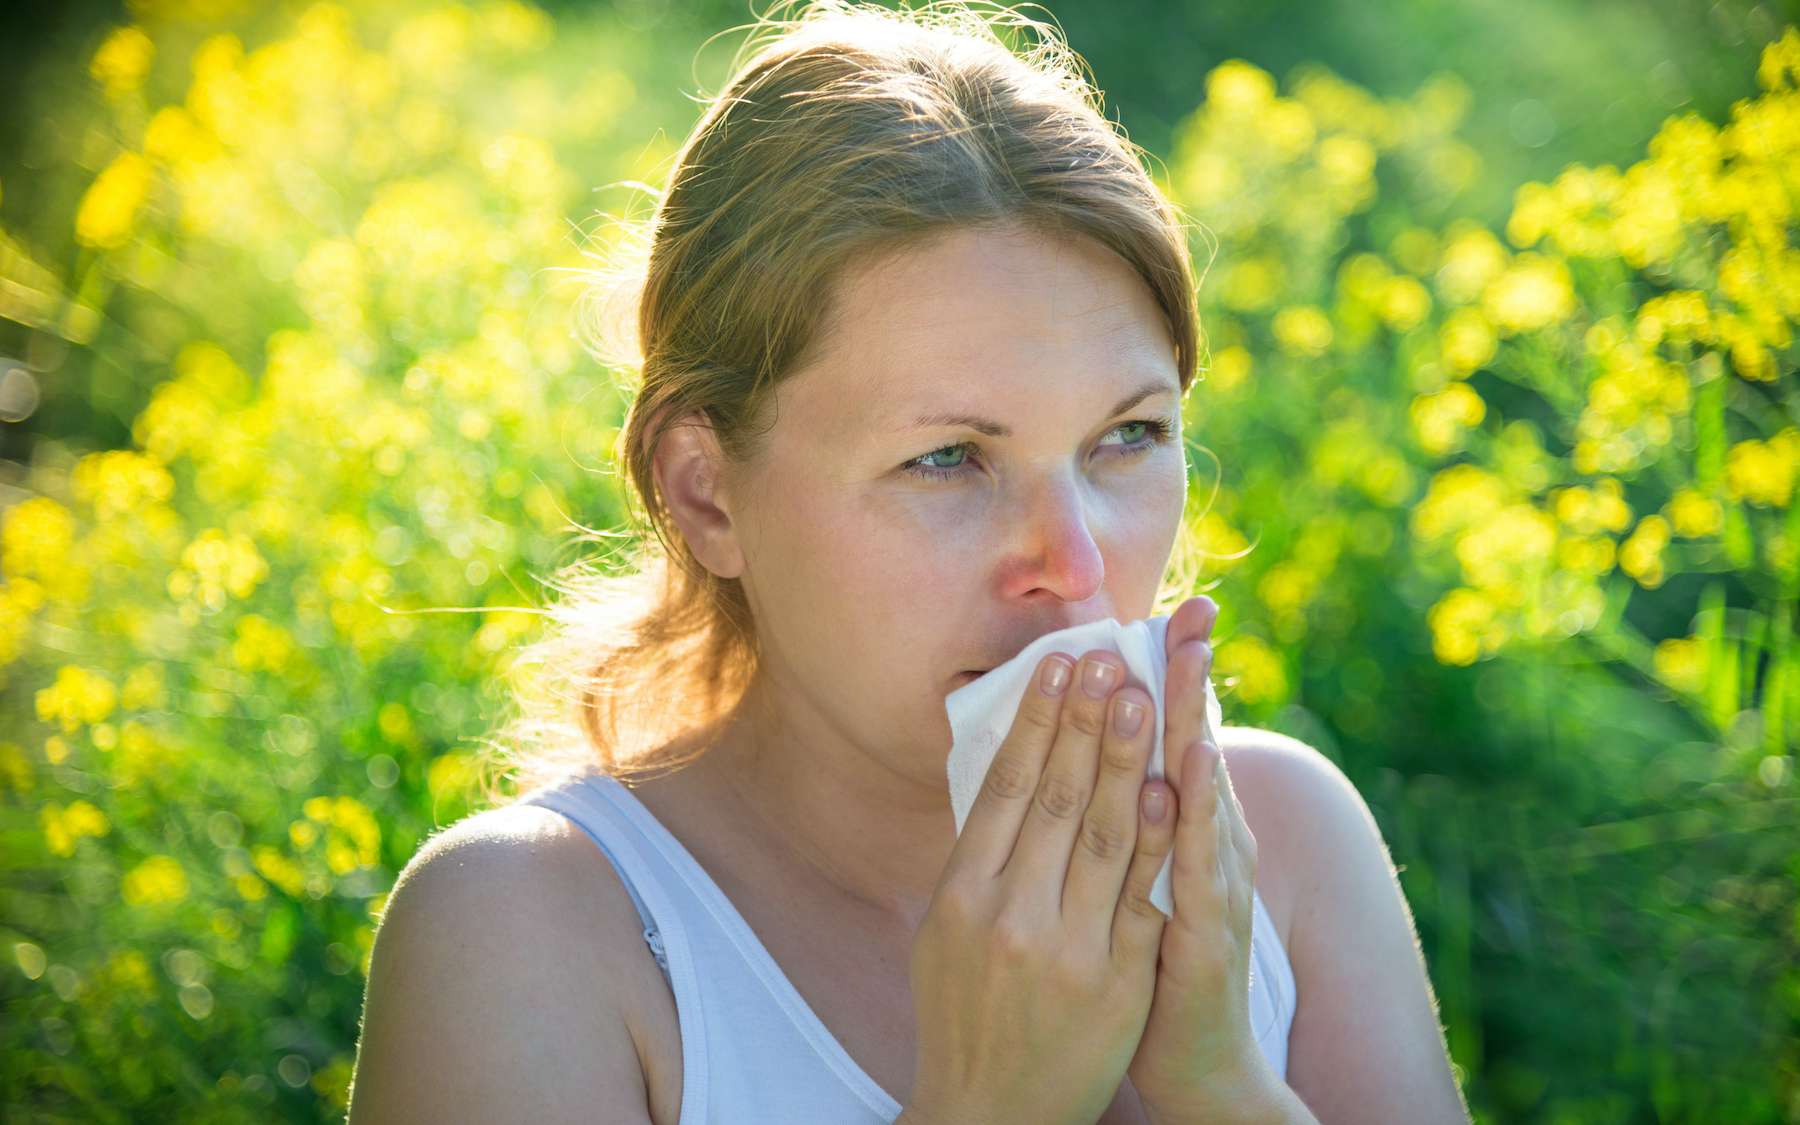 À la fin du siècle, la saison des allergies durera plus longtemps qu'aujourd'hui, selon une simulation informatique. © andreus K, Adobe Stock